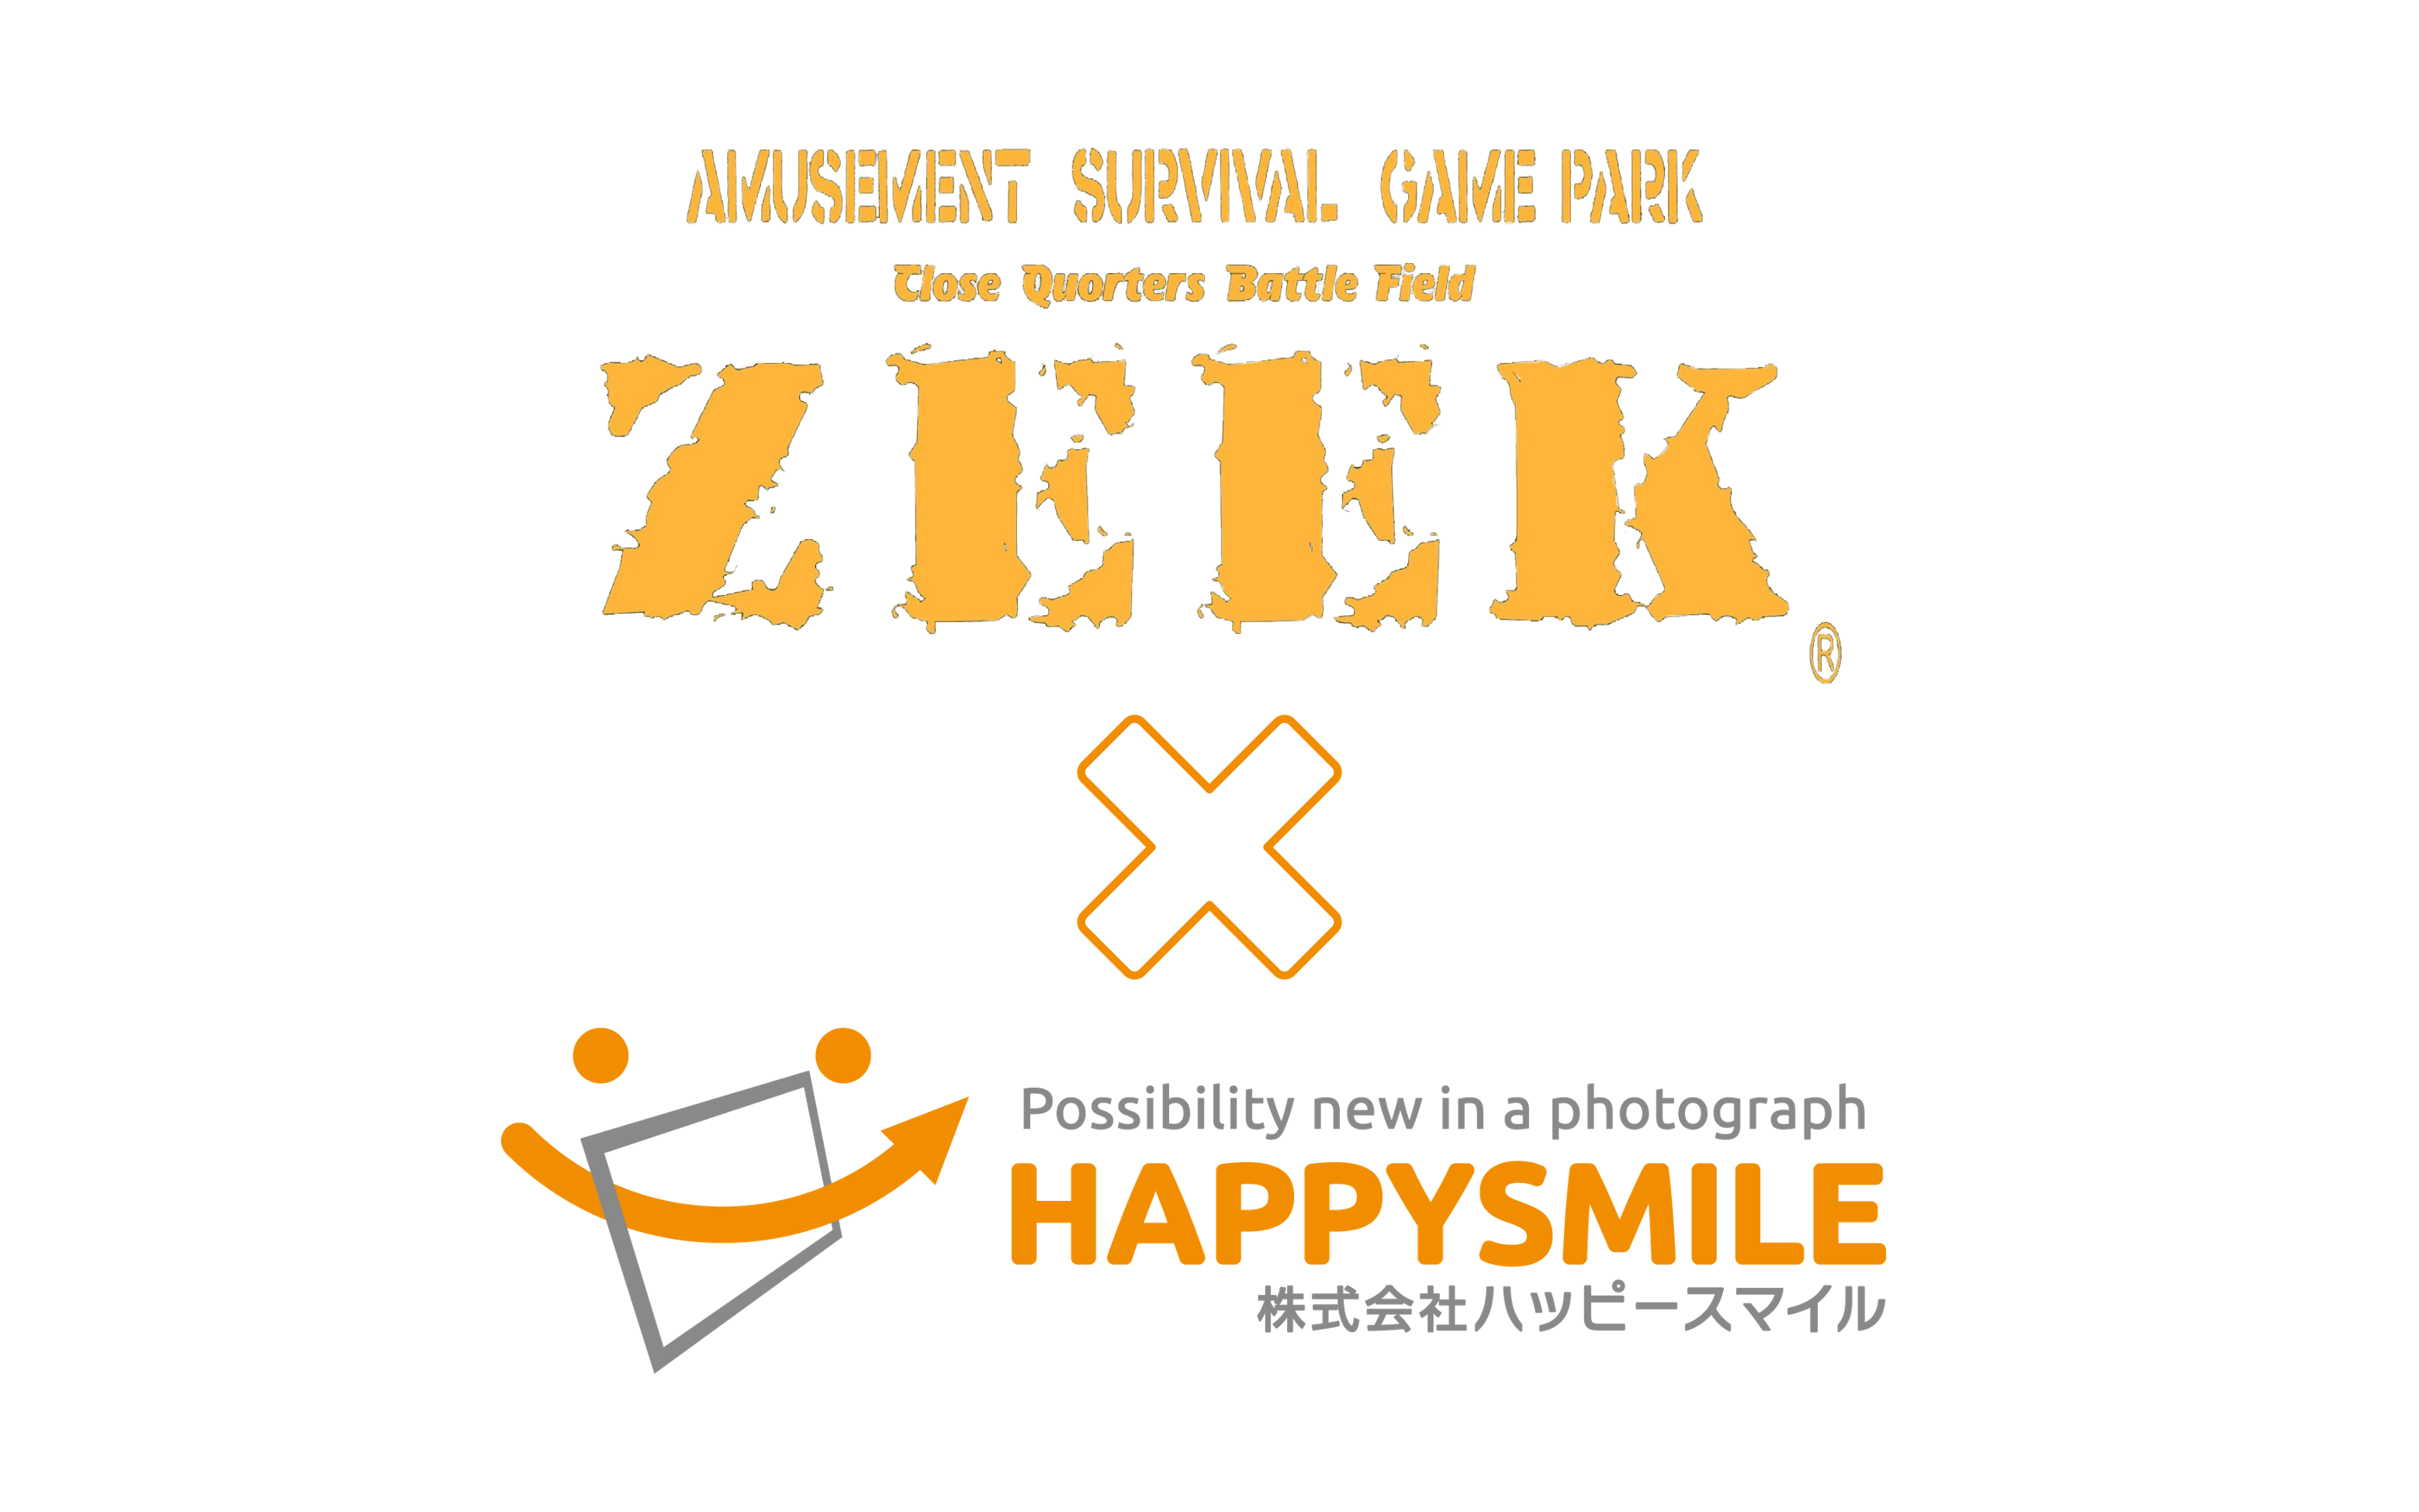 サバイバルゲームフィールド『ZEEK』 × 株式会社ハッピースマイル『みんなのおもいで.com』導入契約を締結